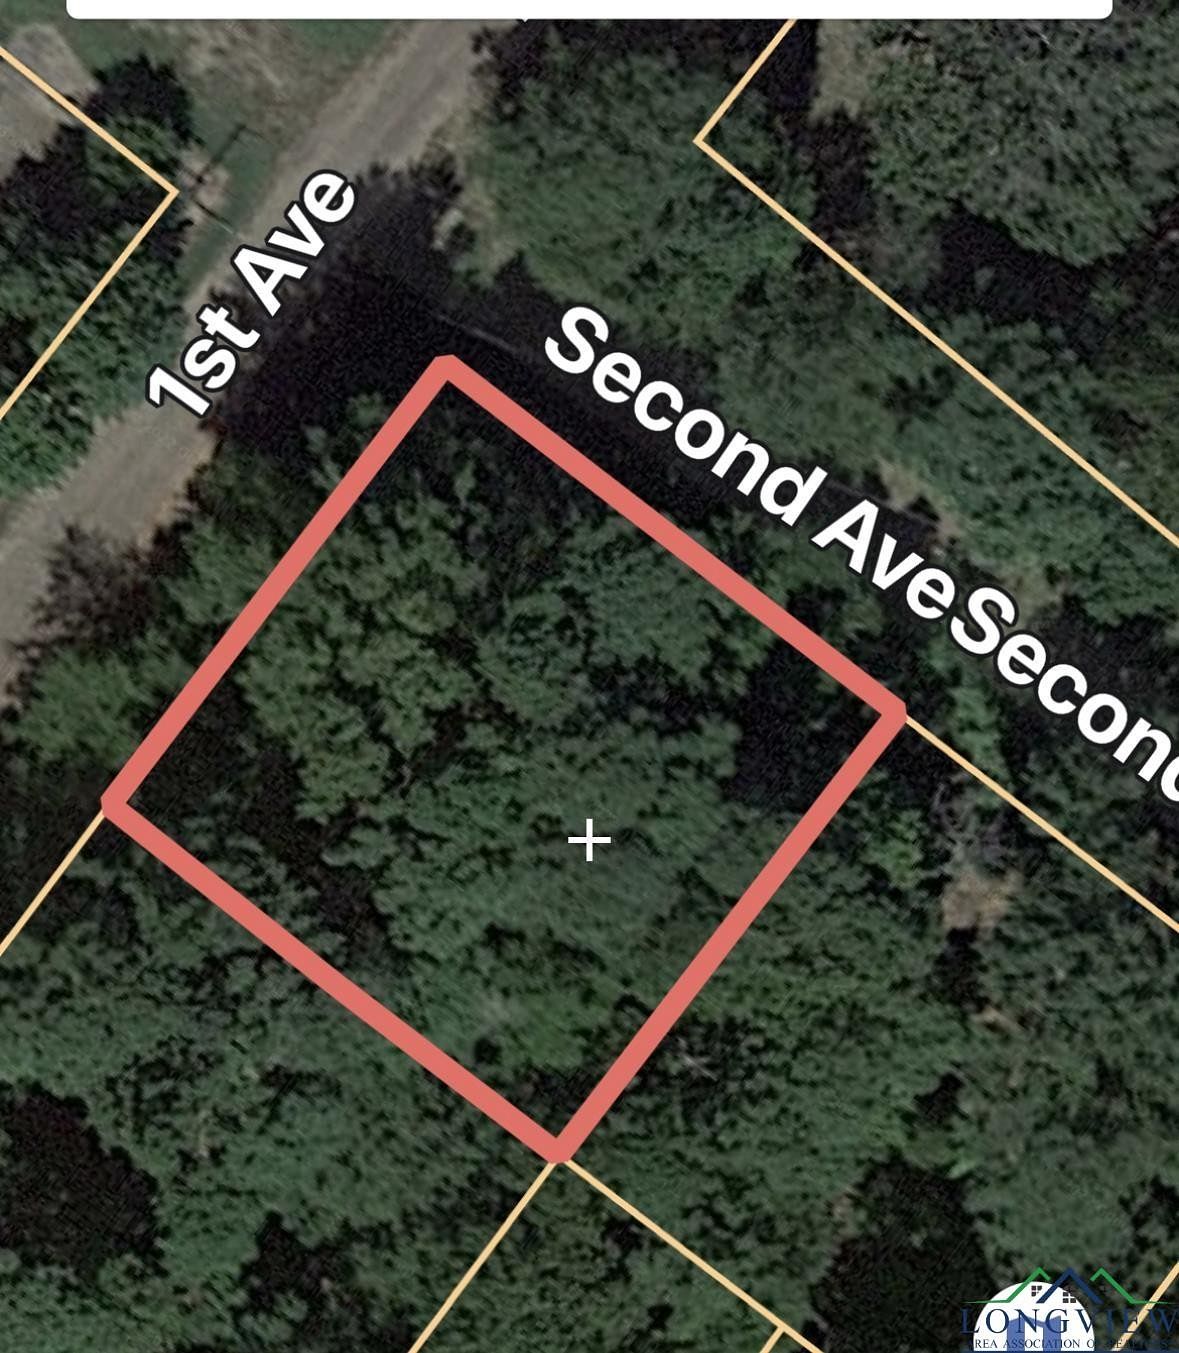 0.25 Acres of Residential Land for Sale in Avinger, Texas